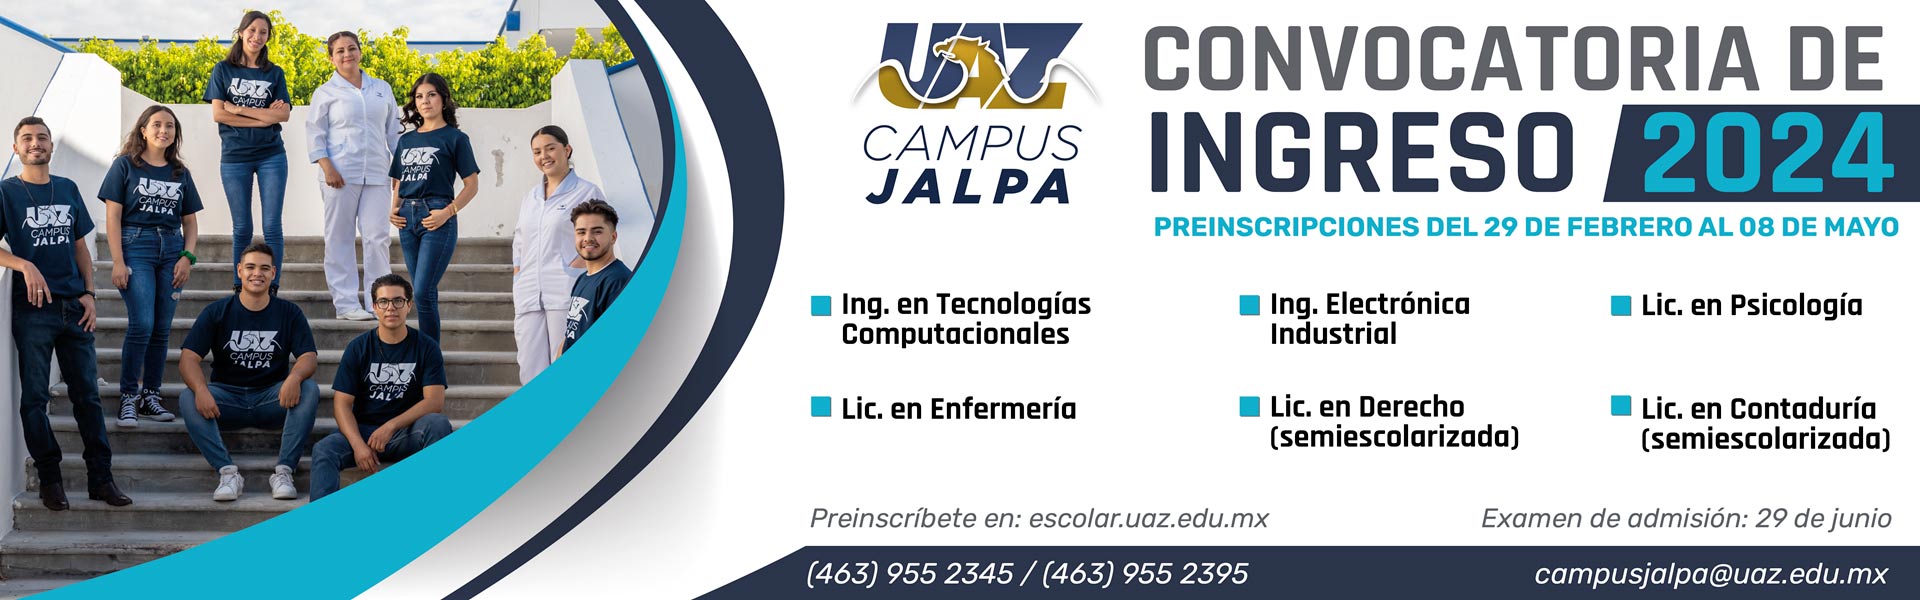 Campus Jalpa Convocatoria de Ingreso